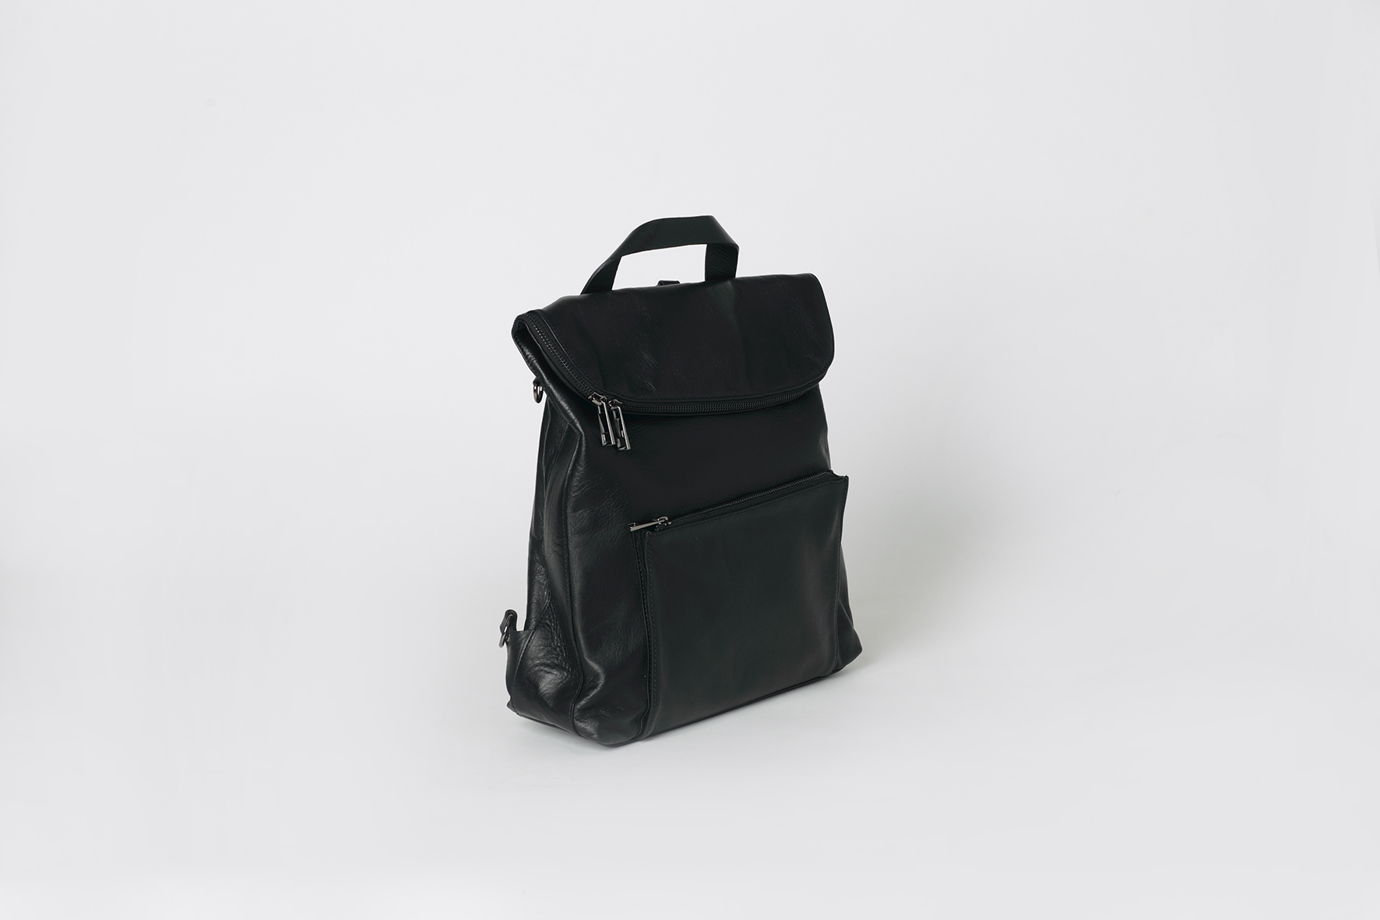 Кожаный рюкзак трансформер - POLARIS - Real leather backpack. В наличии в Москве